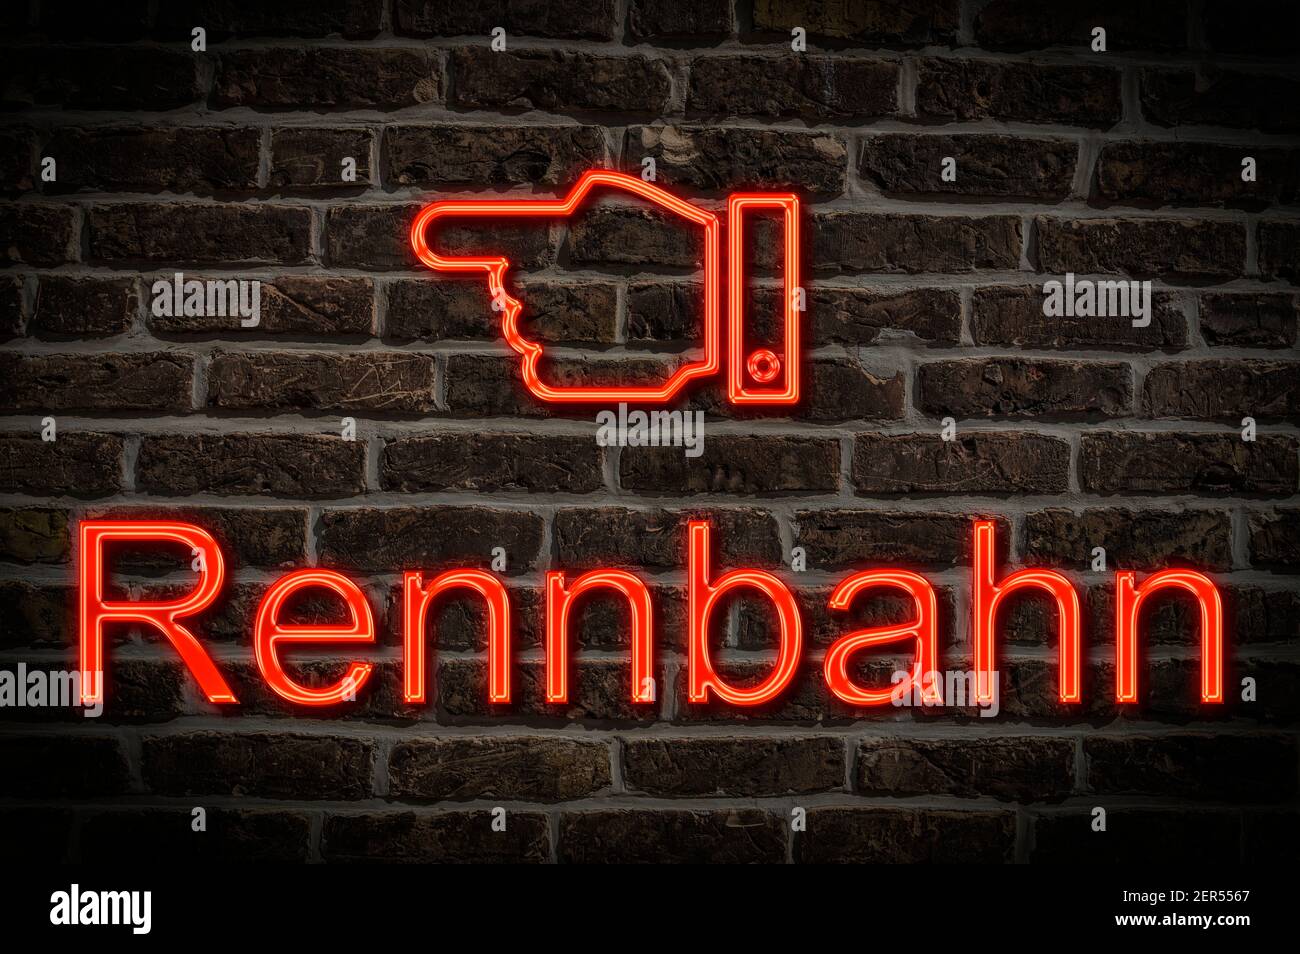 Foto di dettaglio di un cartello al neon su una parete con L'iscrizione Rennbahn (Racetrack) Foto Stock